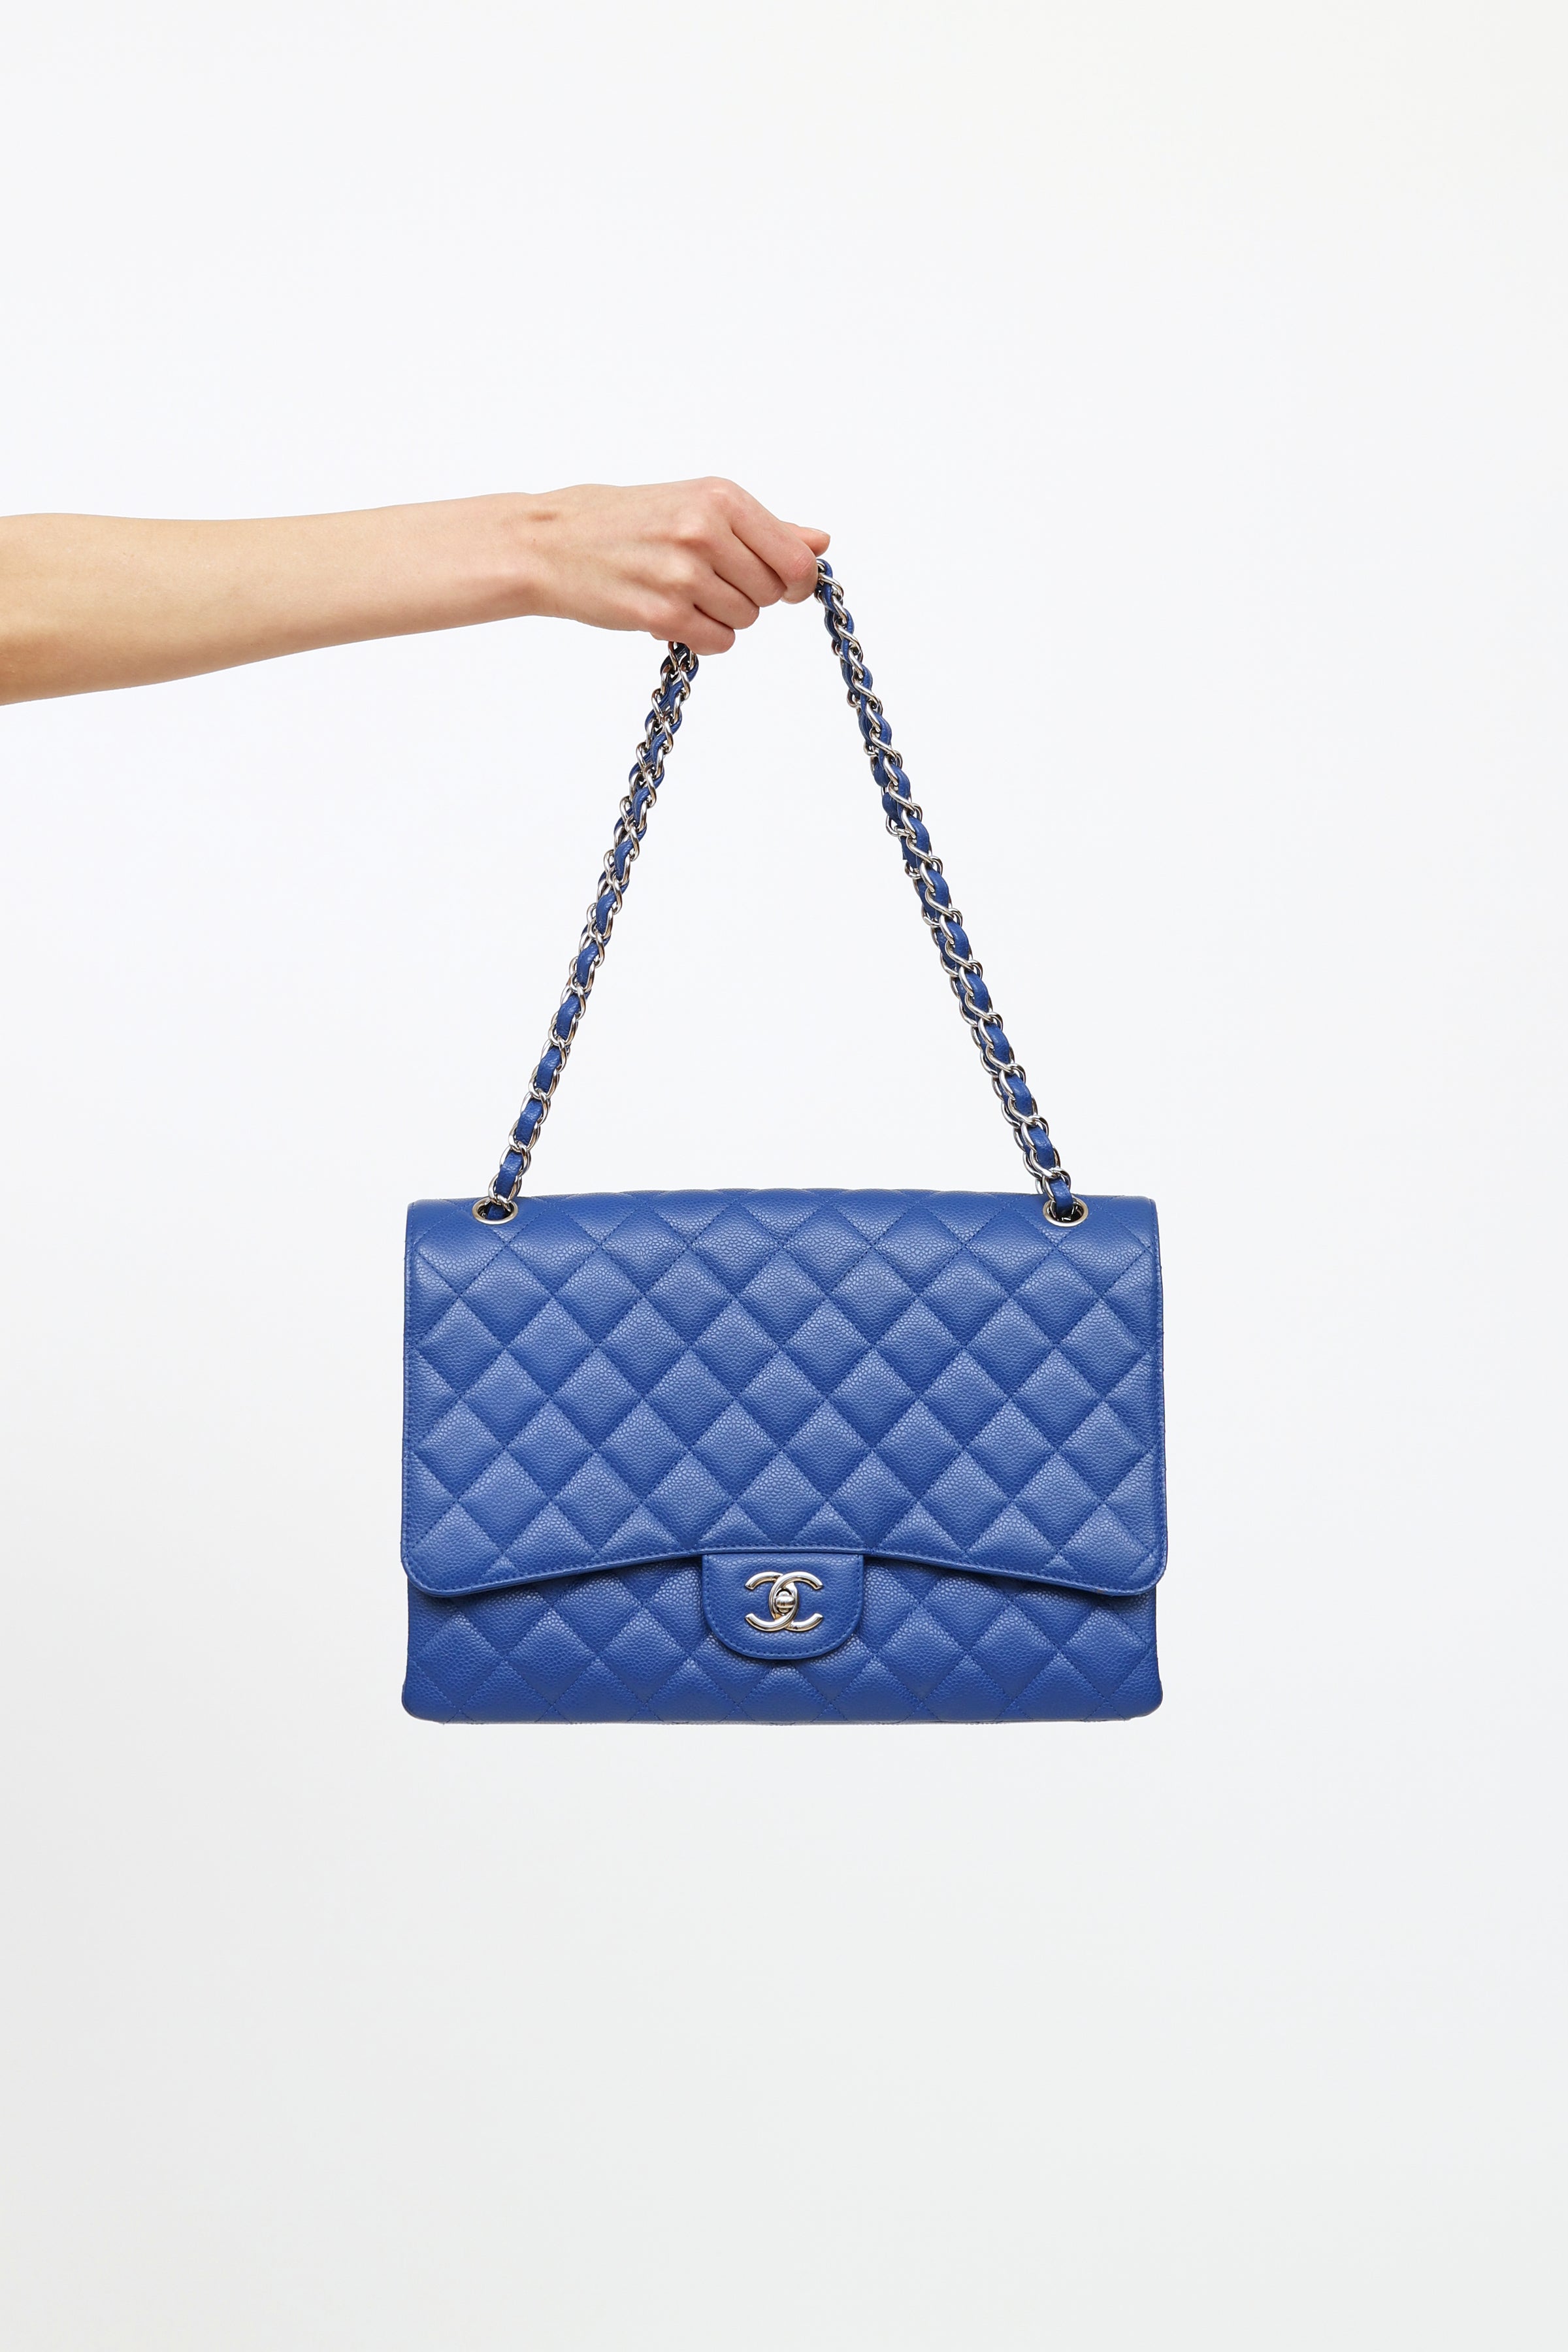 Chanel Boy - Medium in Blue, Leather | Handbag Clinic